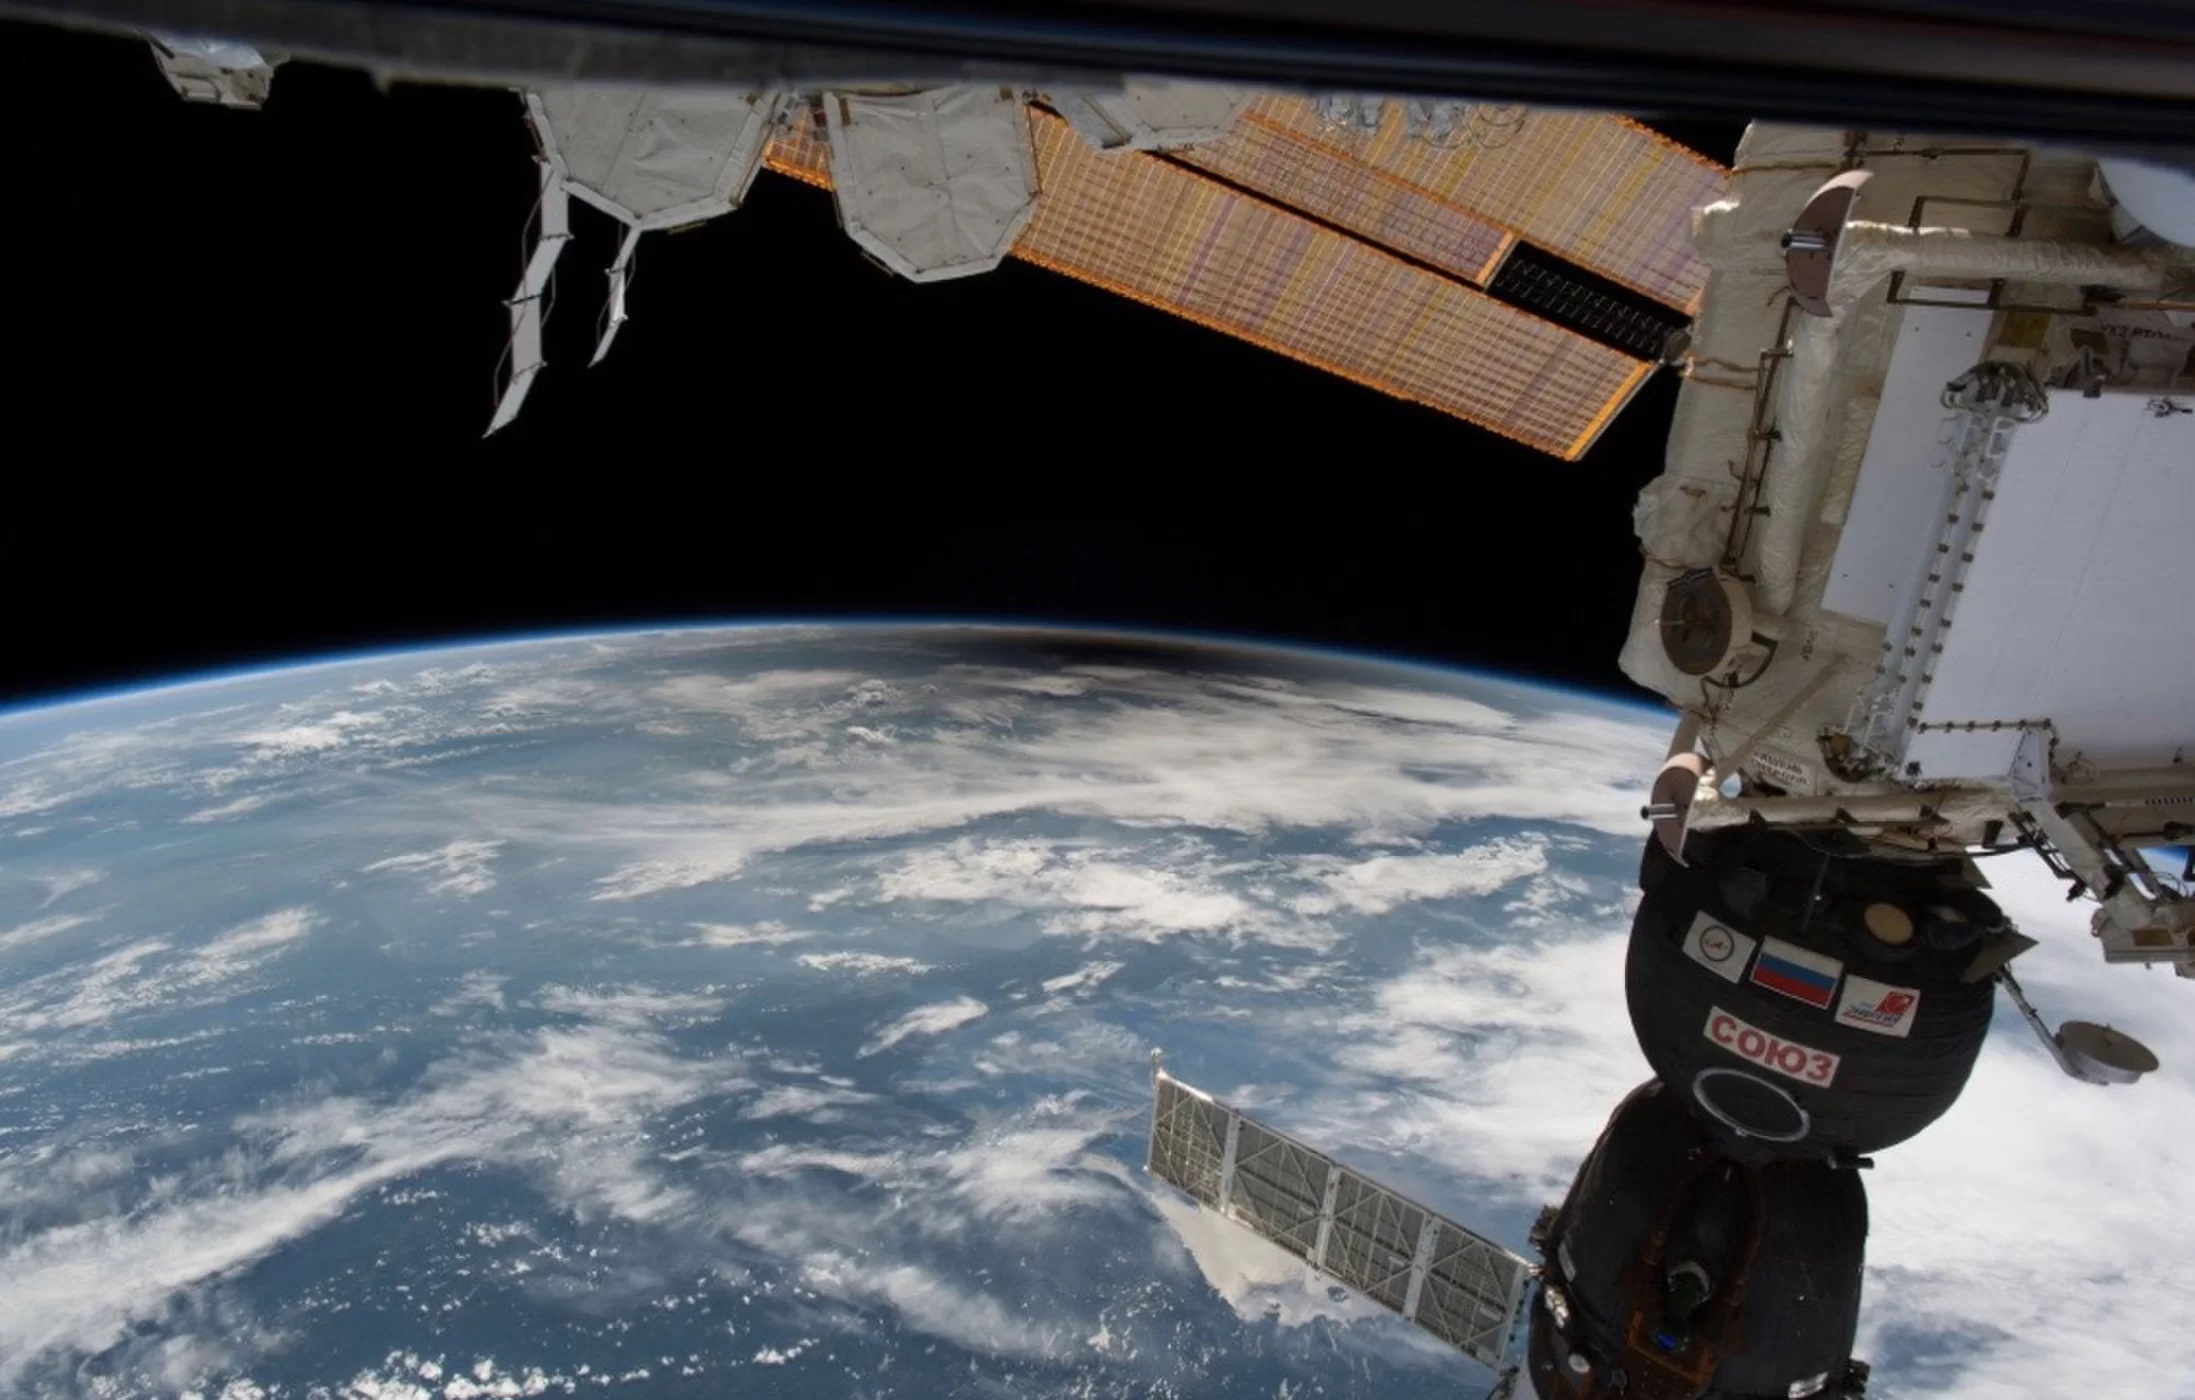 Kolejny obraz zaćmienia widocznego z ISS.